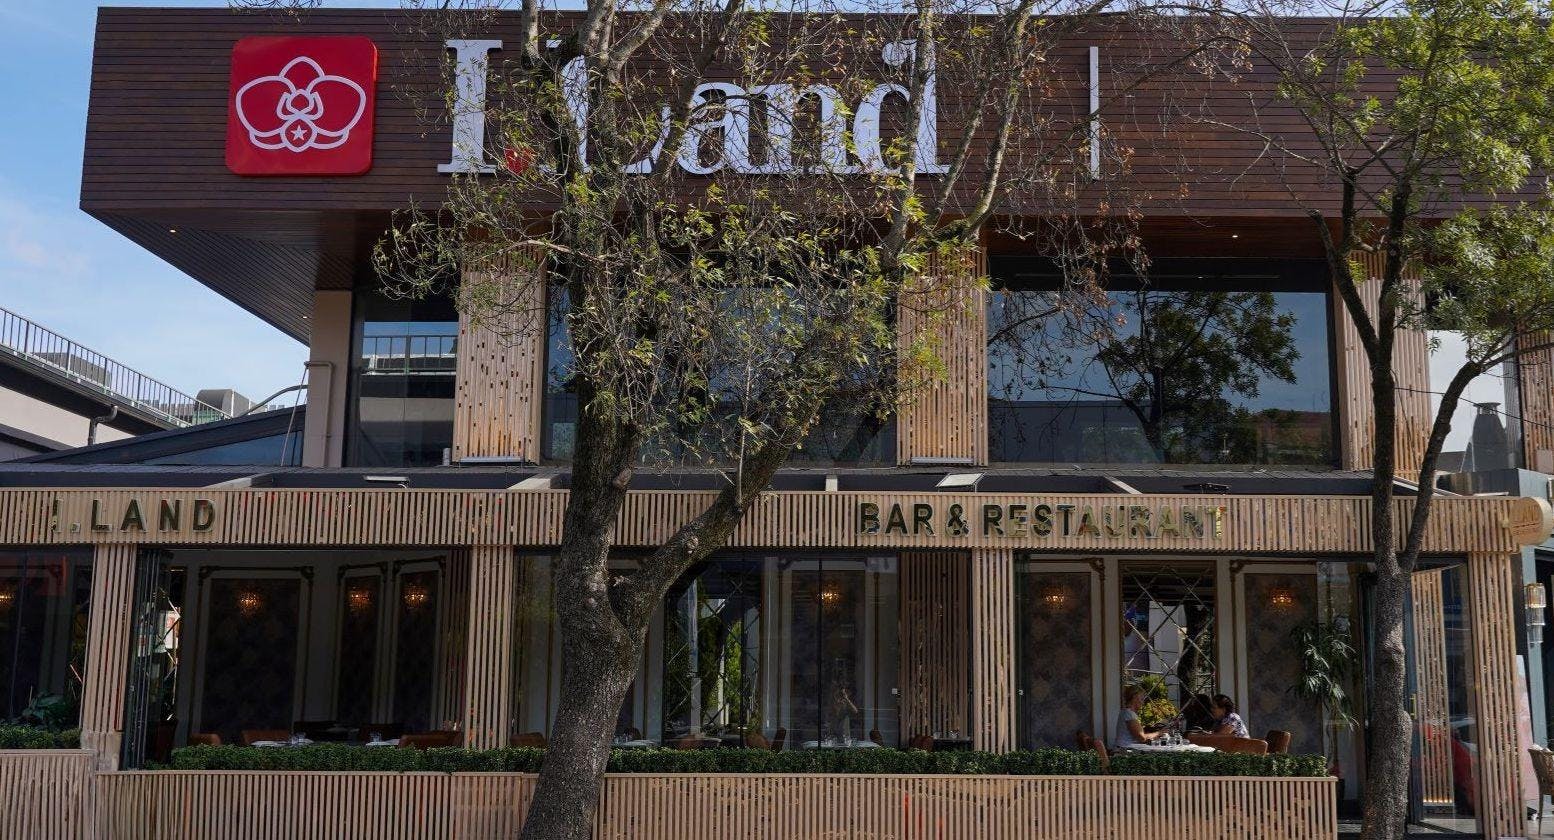 Etiler, İstanbul şehrindeki I.Land Restaurant and Bar restoranının fotoğrafı